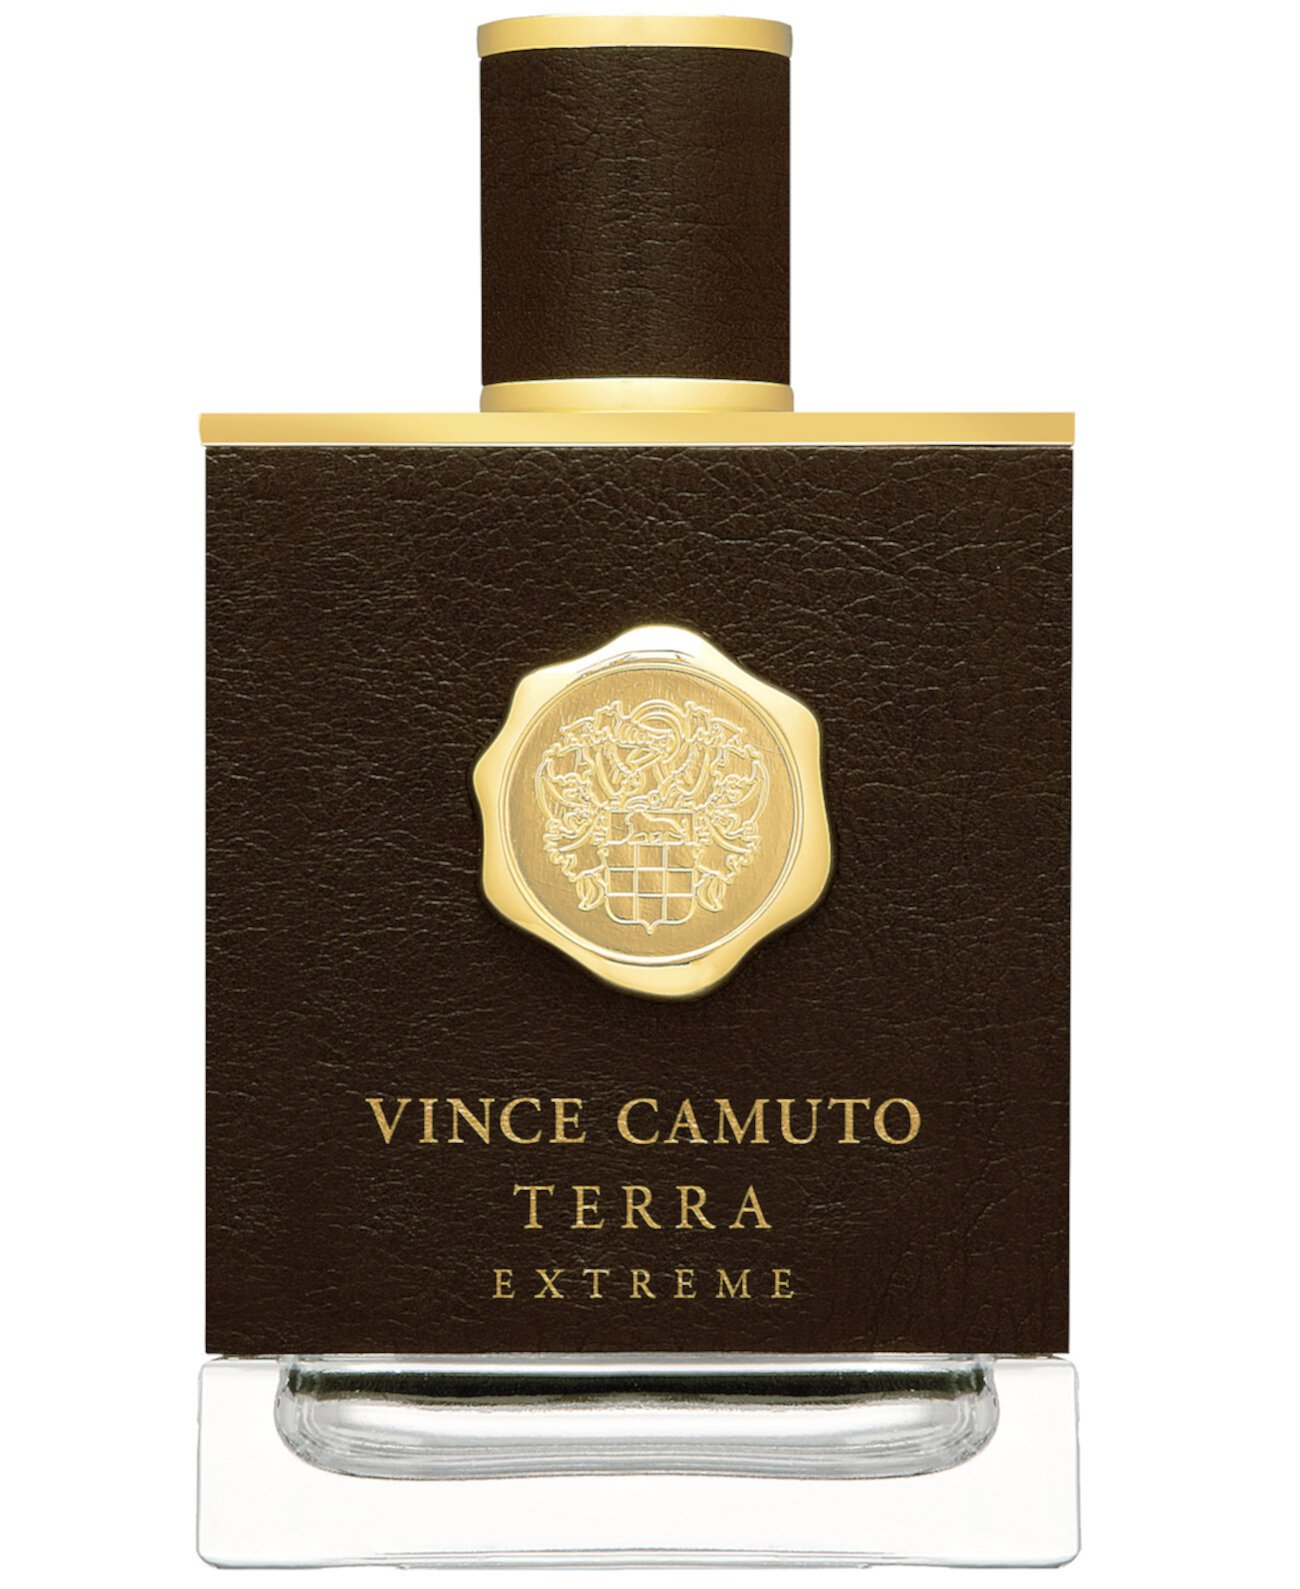 Мужская парфюмированная вода Terra Extreme, спрей, 3,4 унции. Vince Camuto